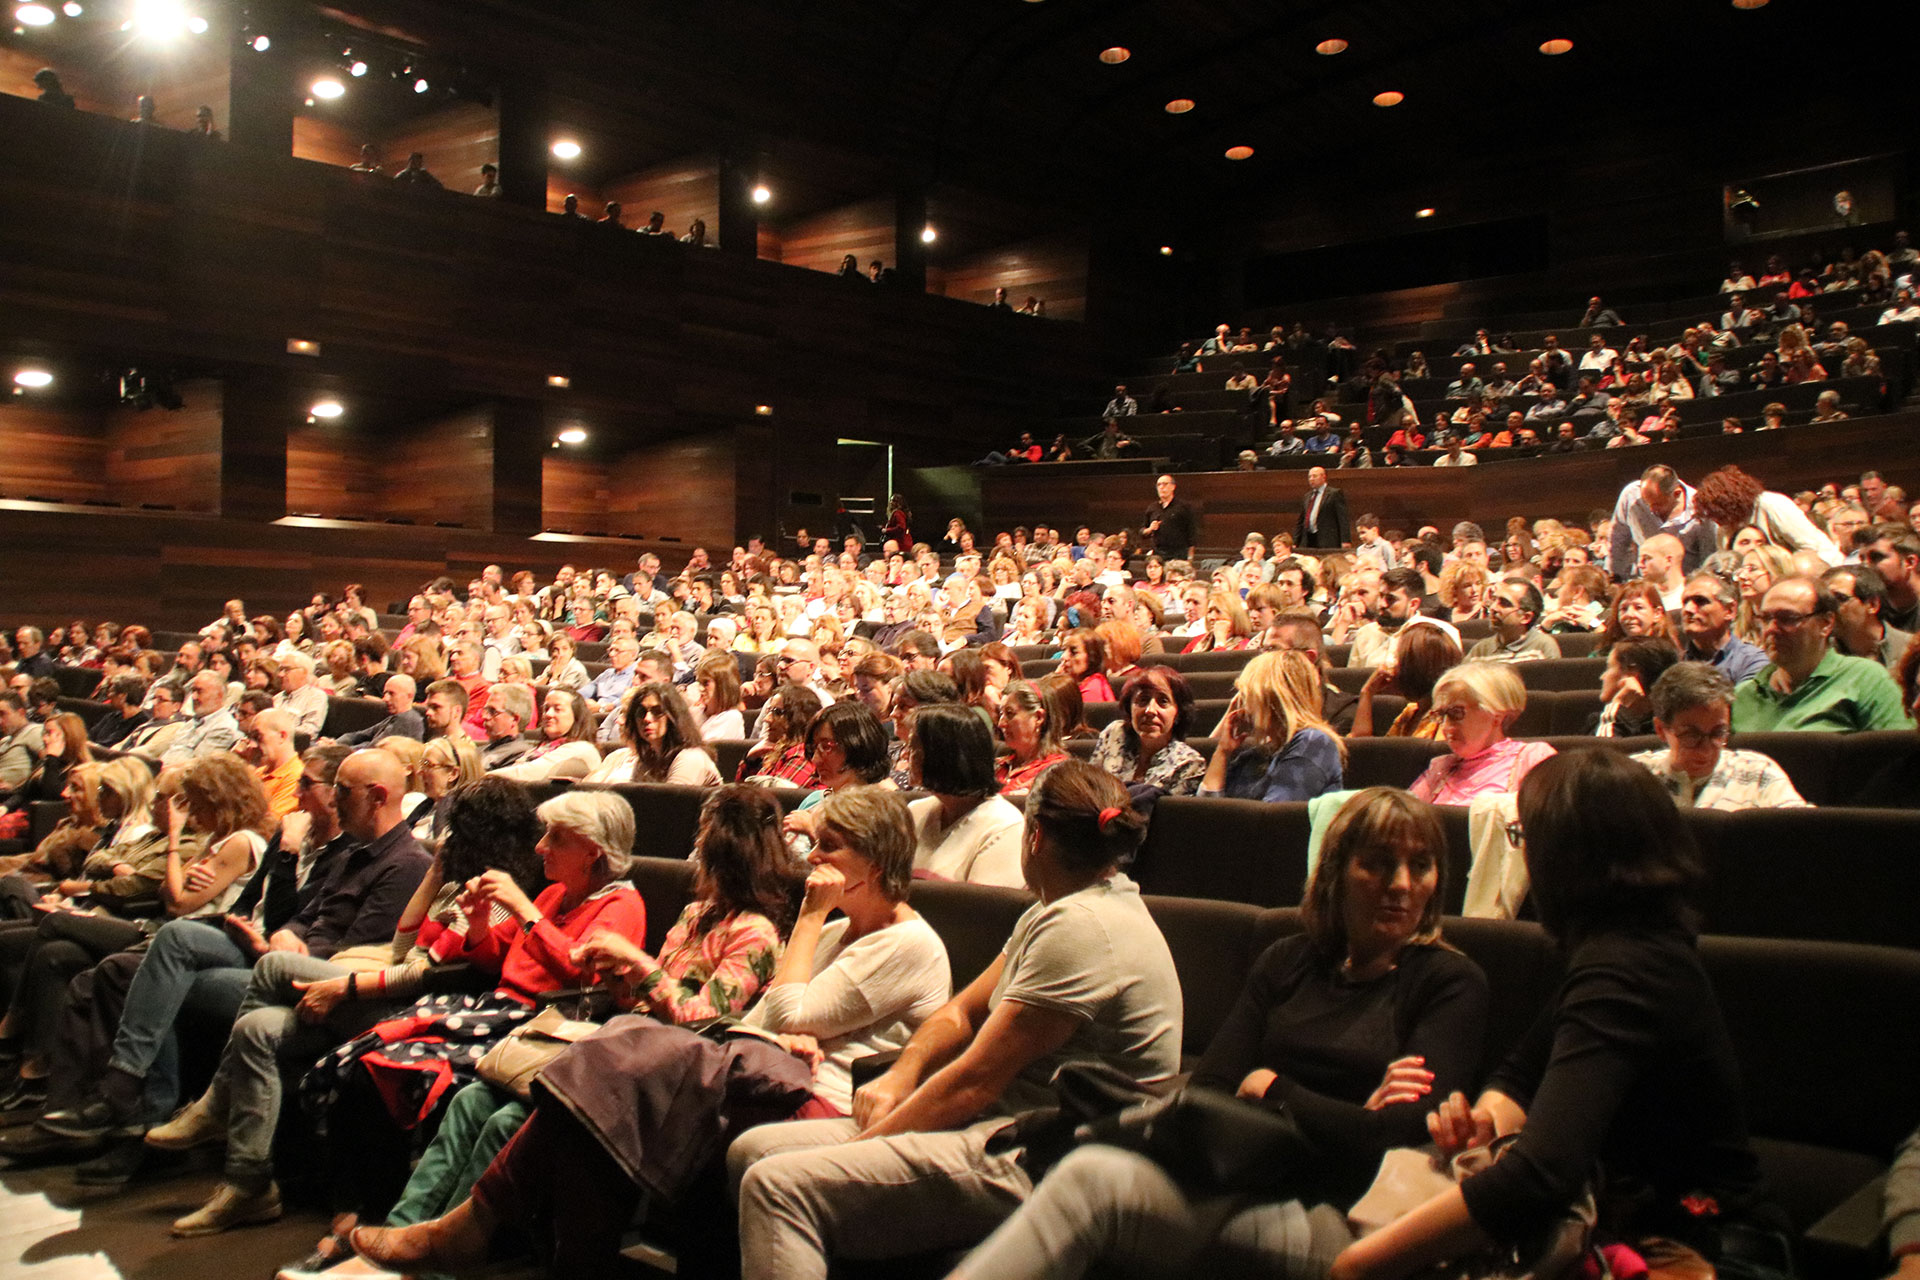 Público en el Auditorio de León